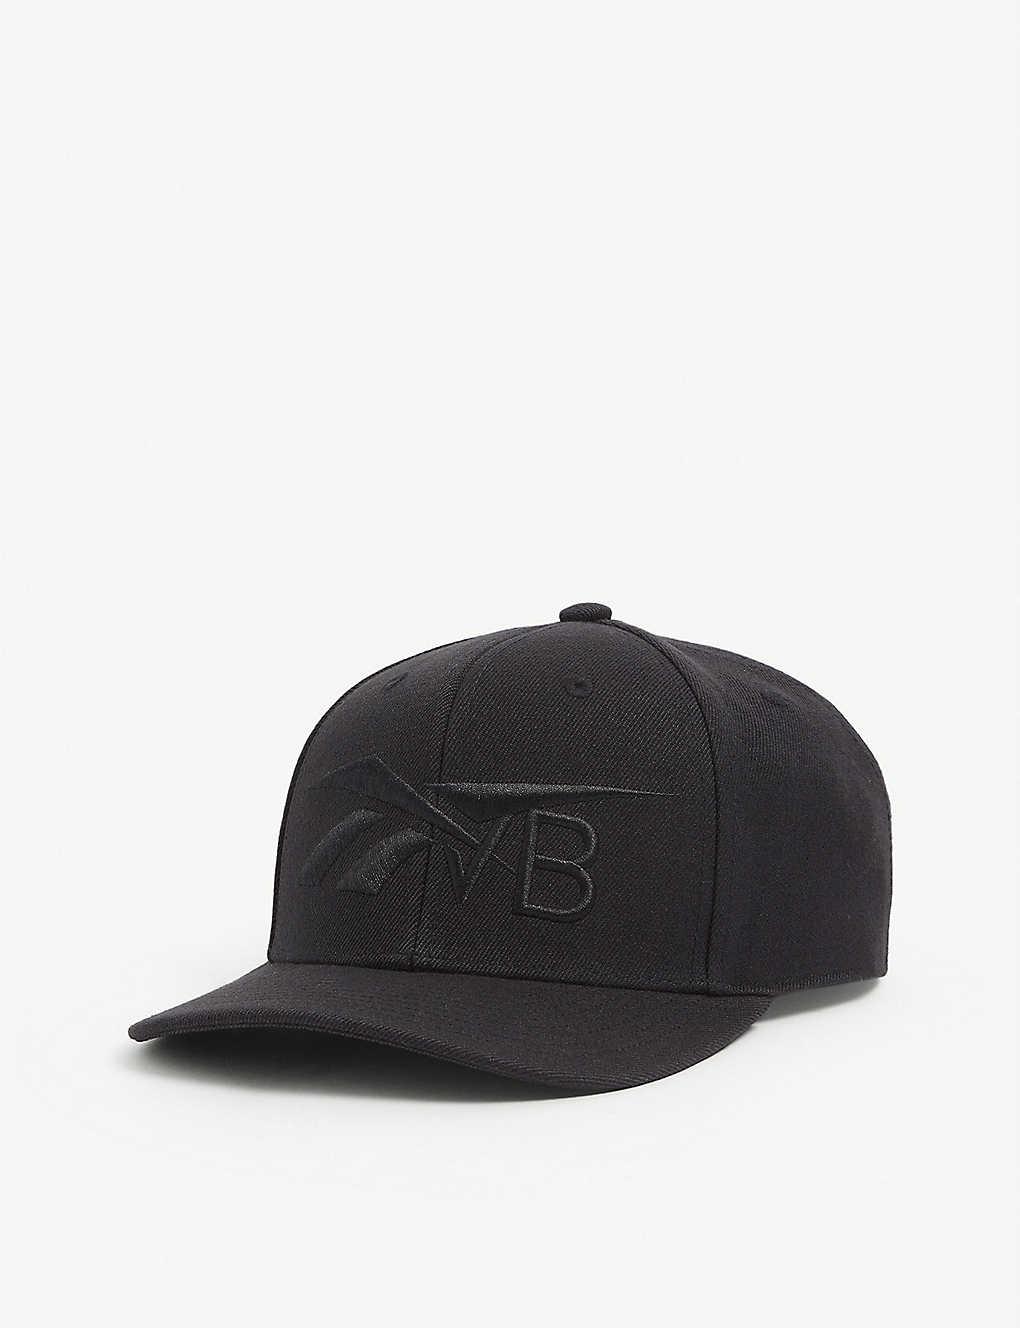 Reebok X Victoria Beckham Synthetic Rbk Vb Baseball Cap in Black - Lyst